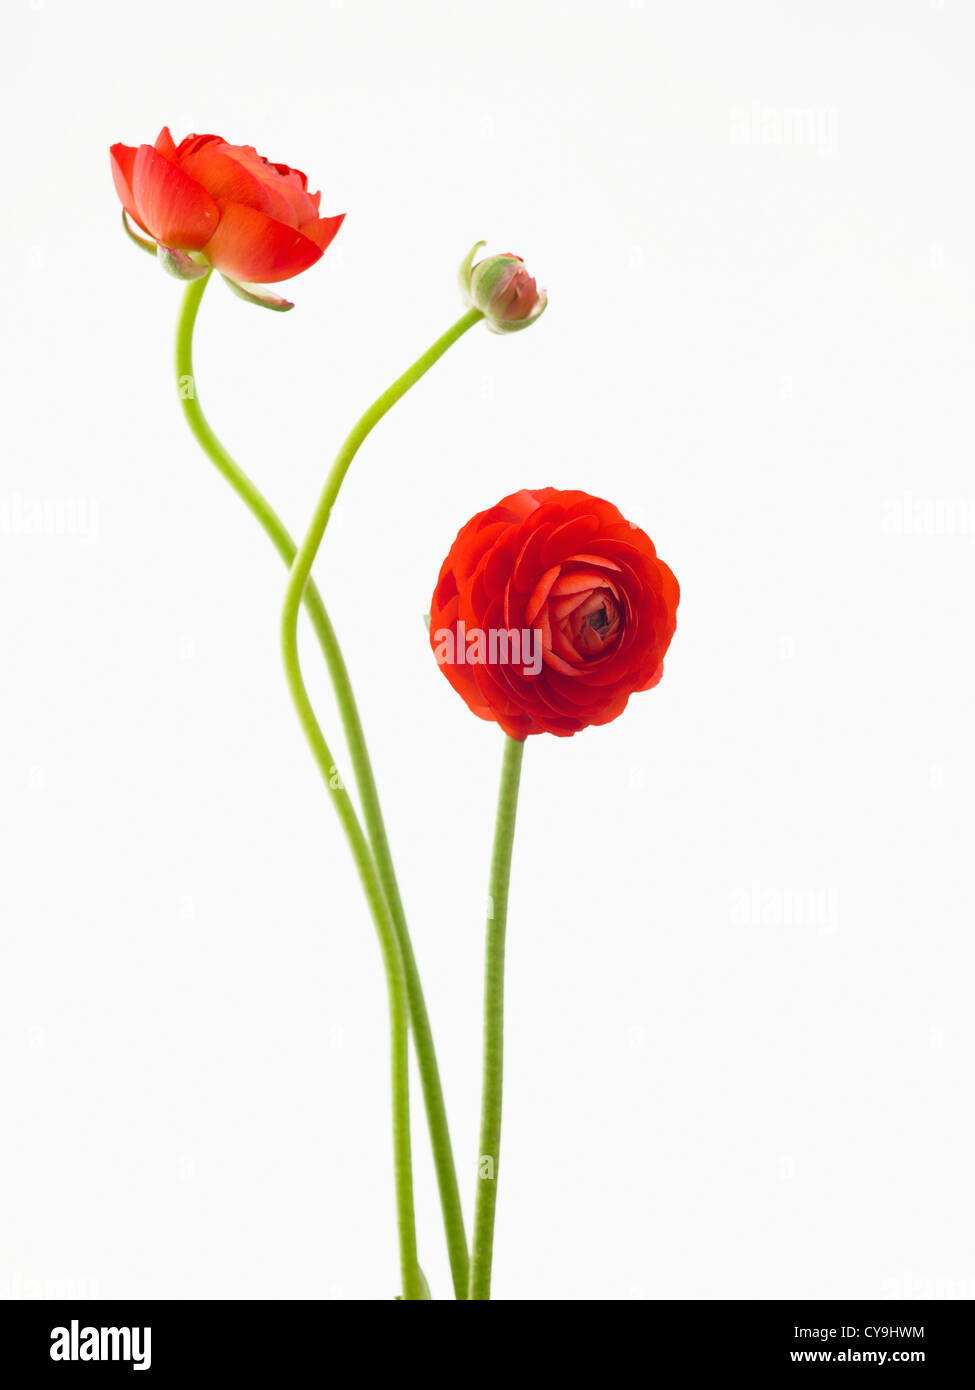 Ranunculus Asiaticus 'Eleganz rot', roter persische Ranunkeln vor einem weißen Hintergrund. Stockfoto